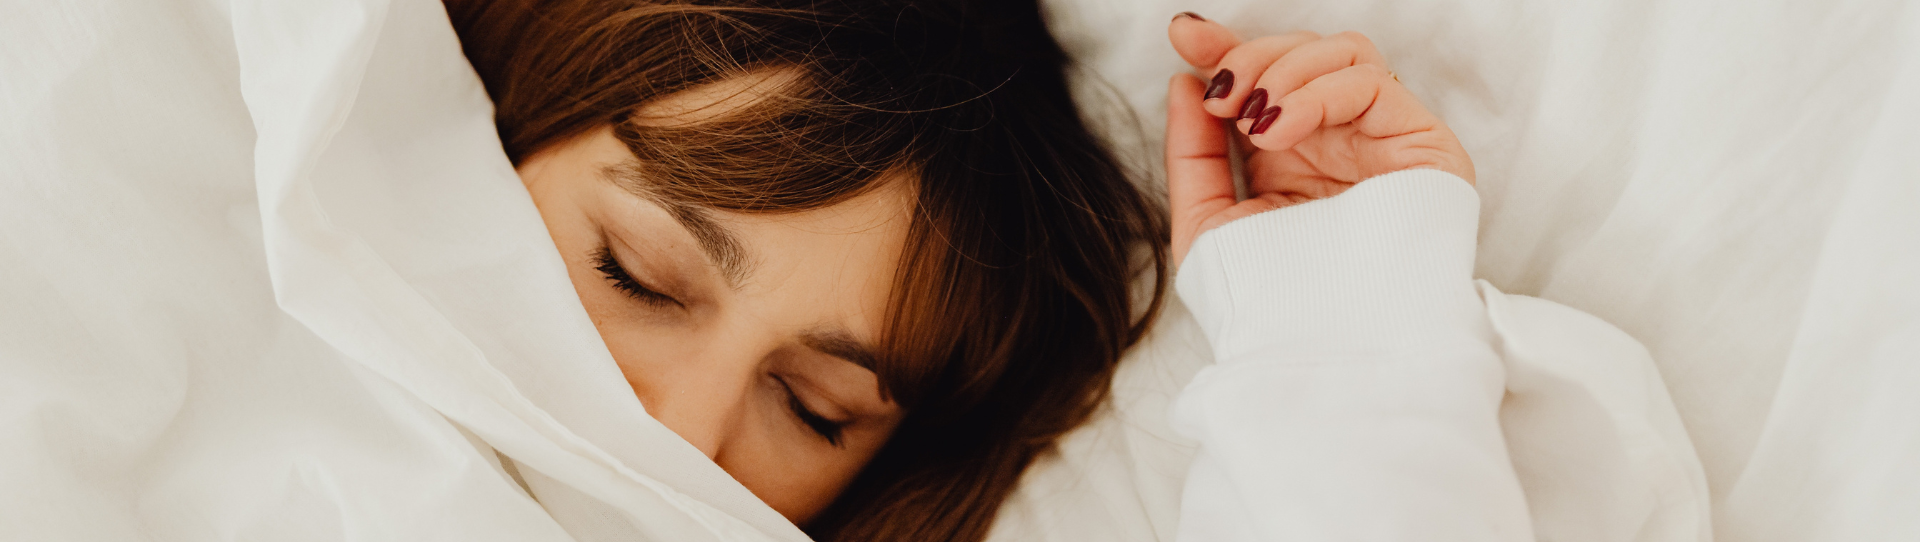 Obtenir une bonne nuit de sommeil en période de stress et d'inquiétude